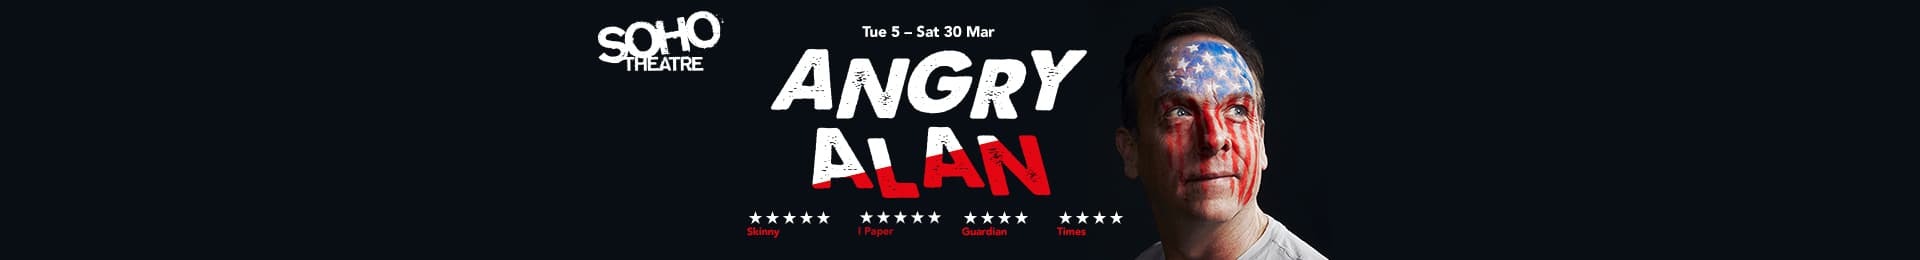 Angry Alan banner image